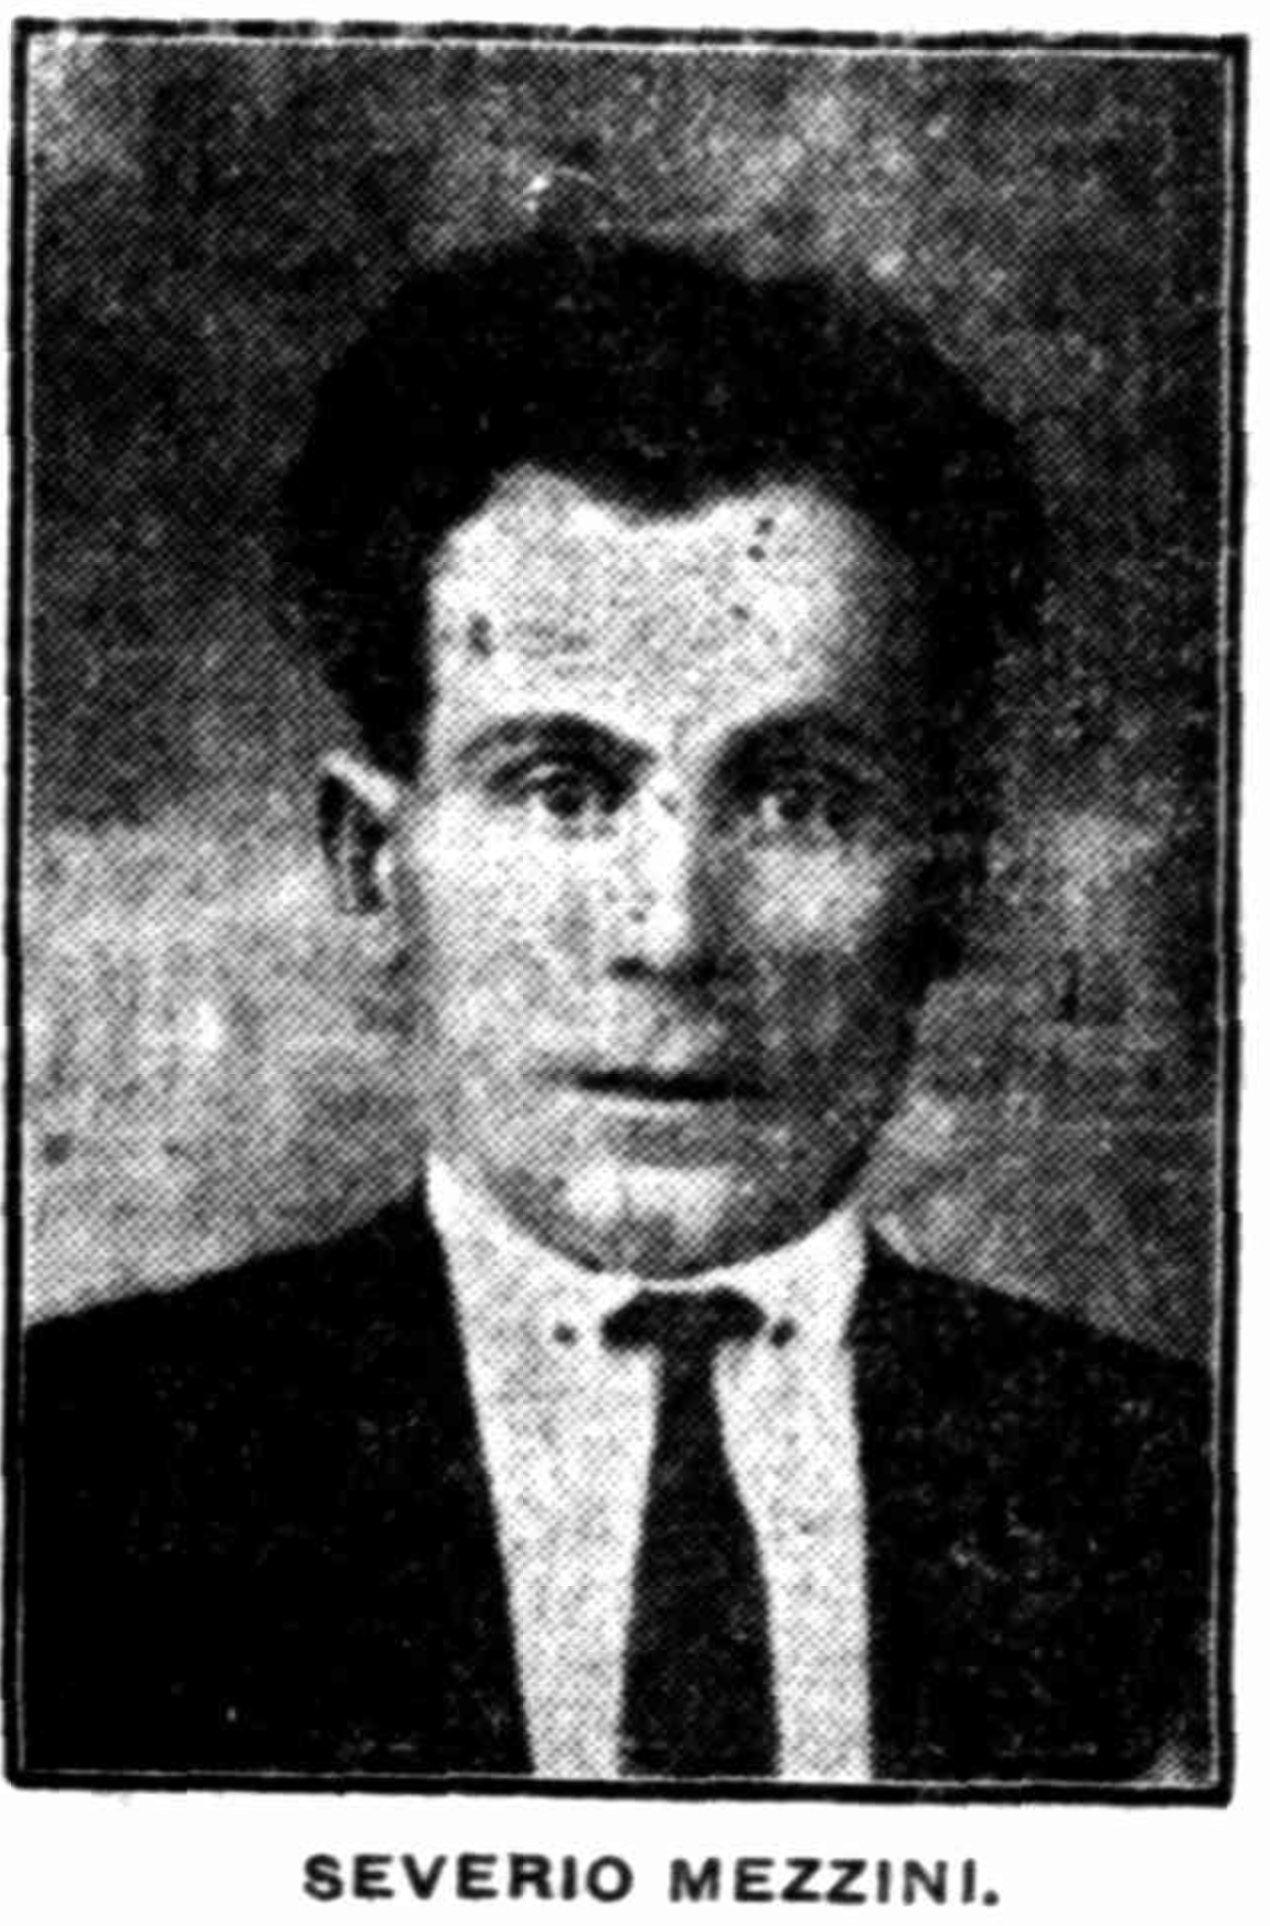 Old black and white portrait of Saverio Mezzini